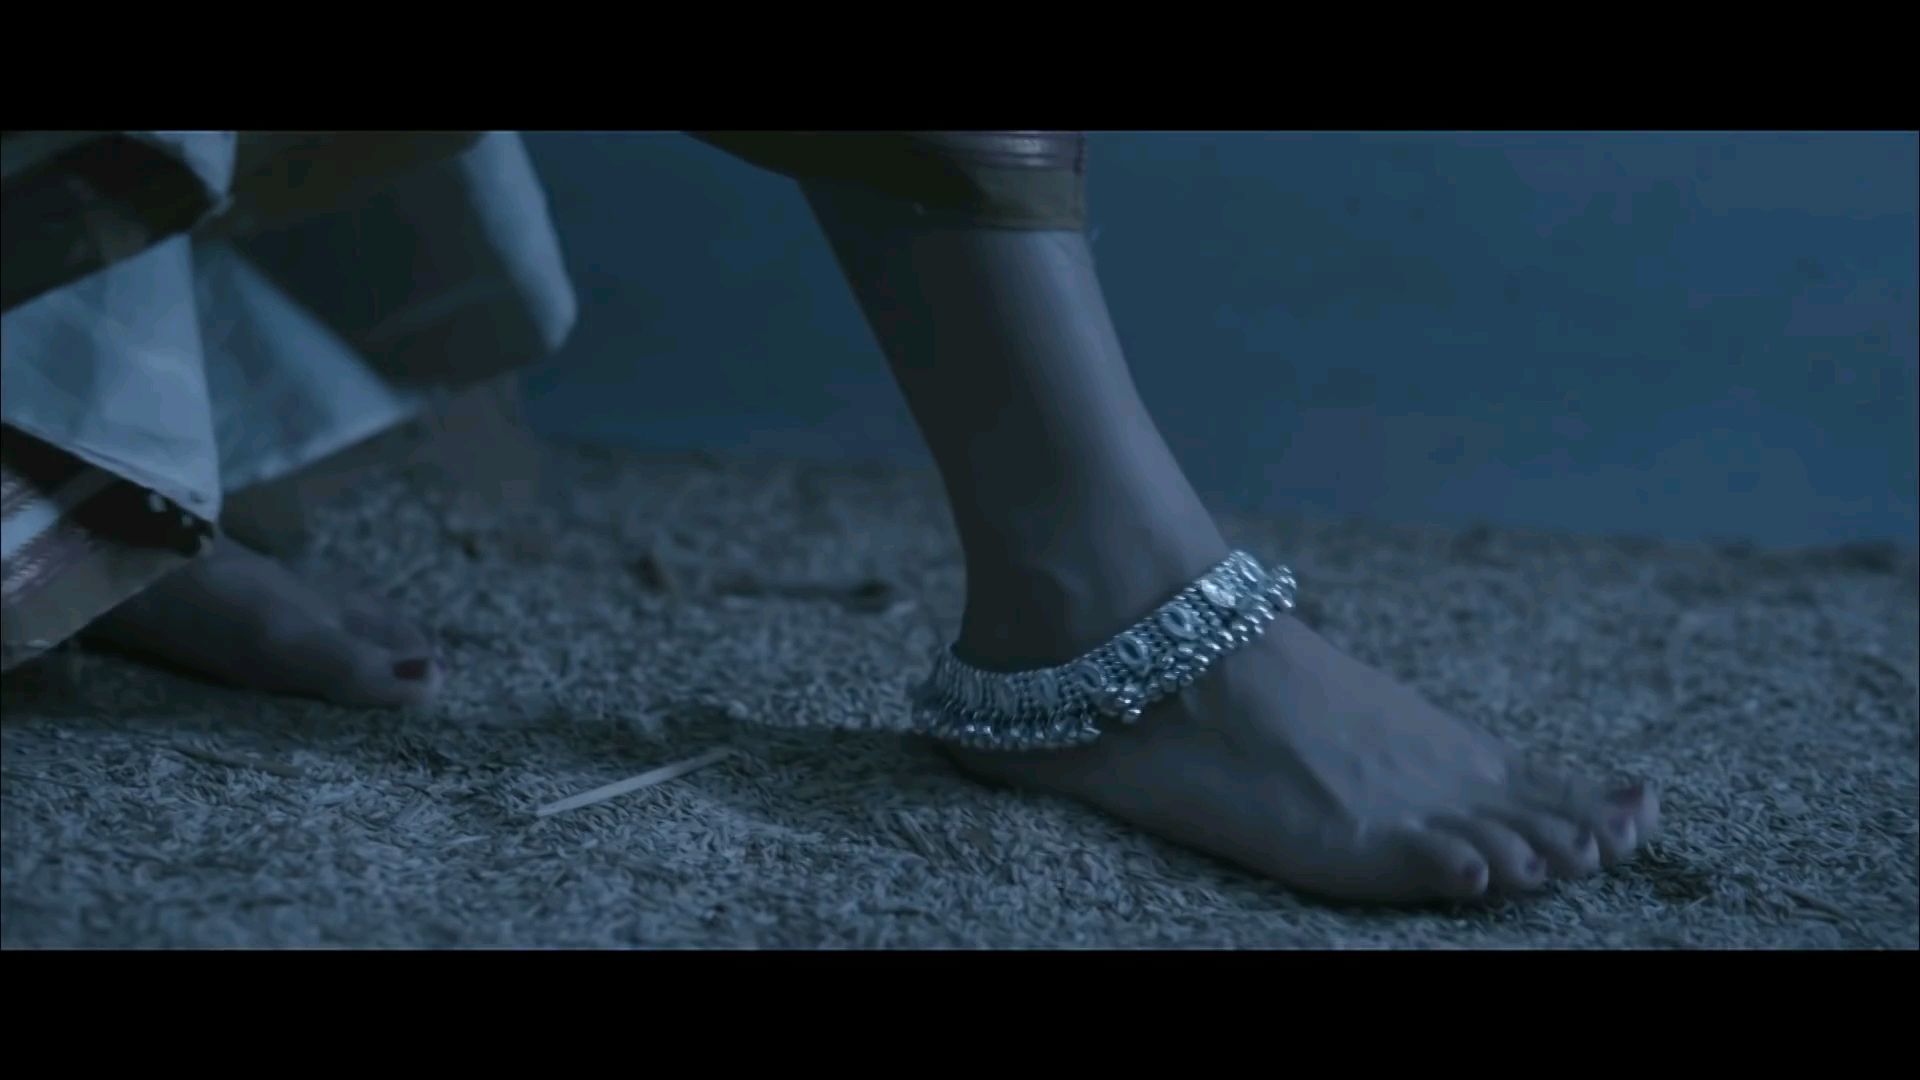 Sri Divya's Feet << wikiFeet